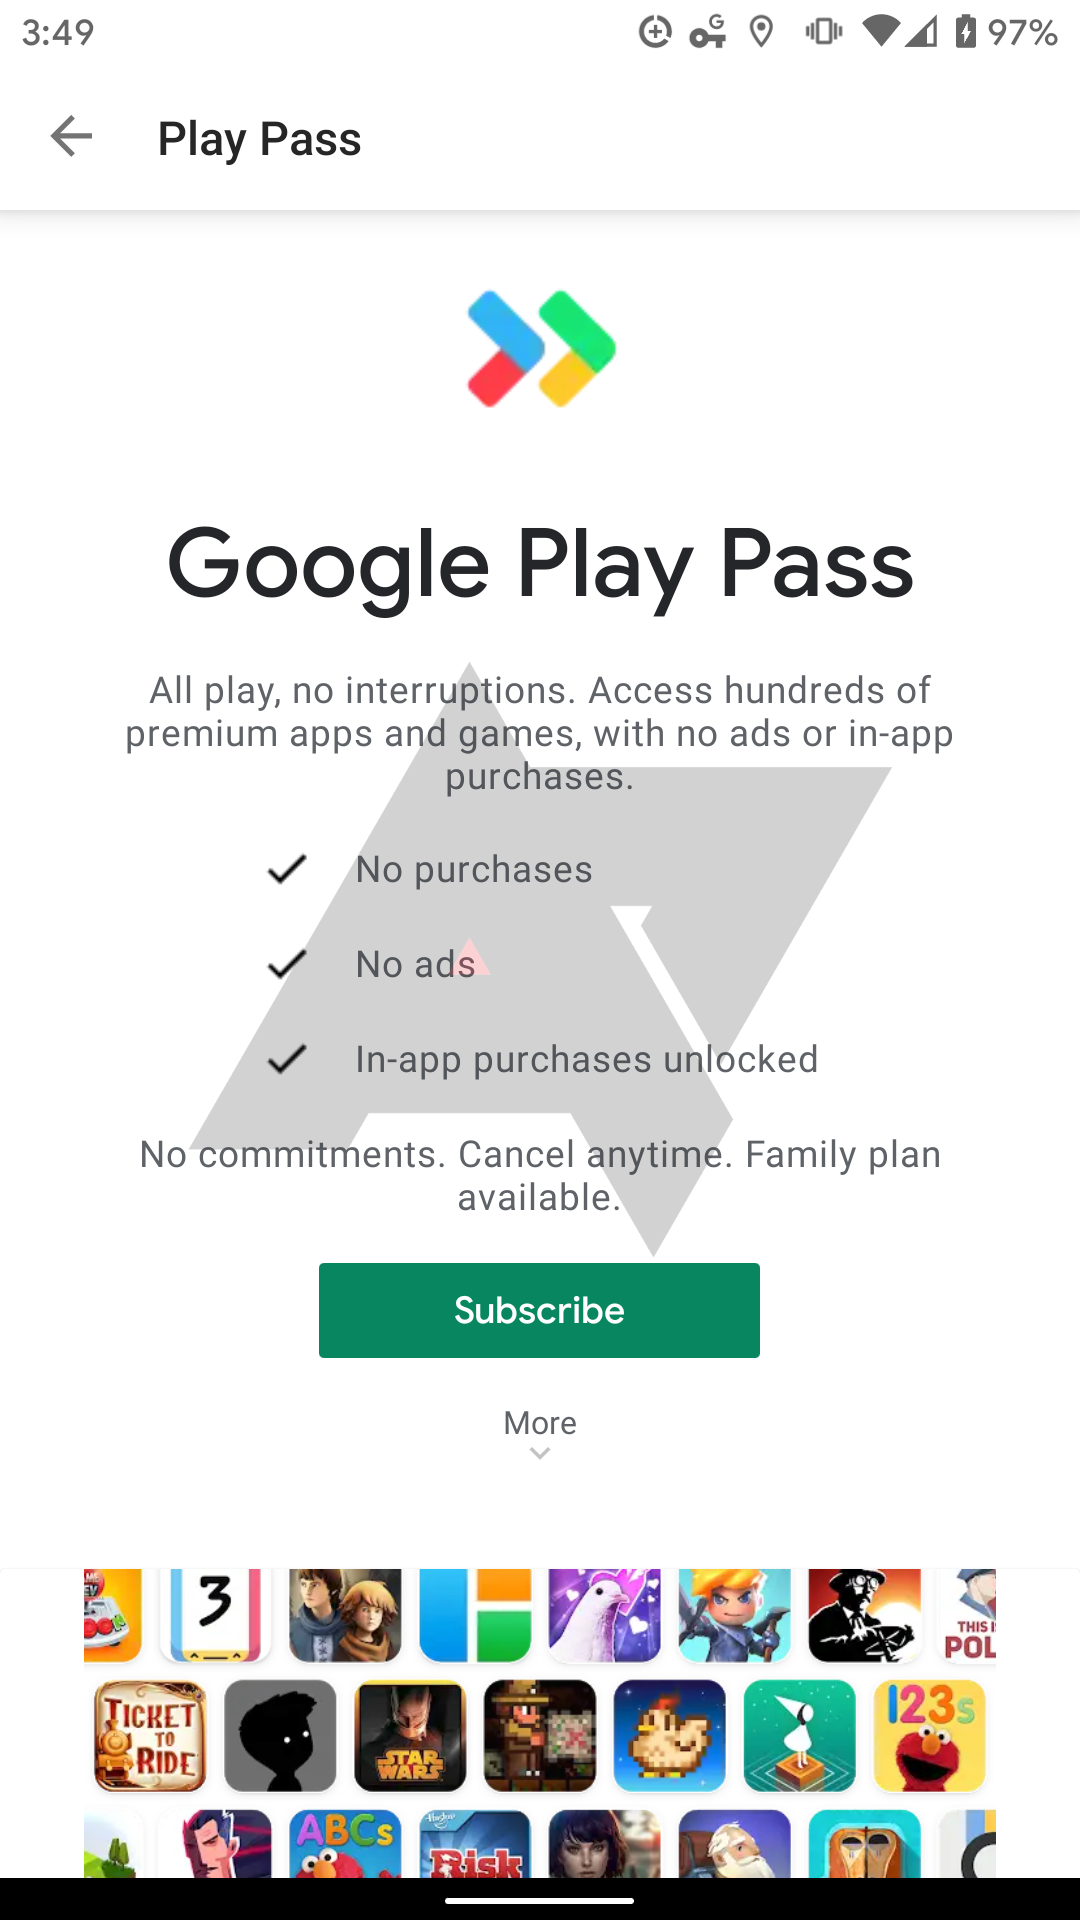 google-play-pass02.png